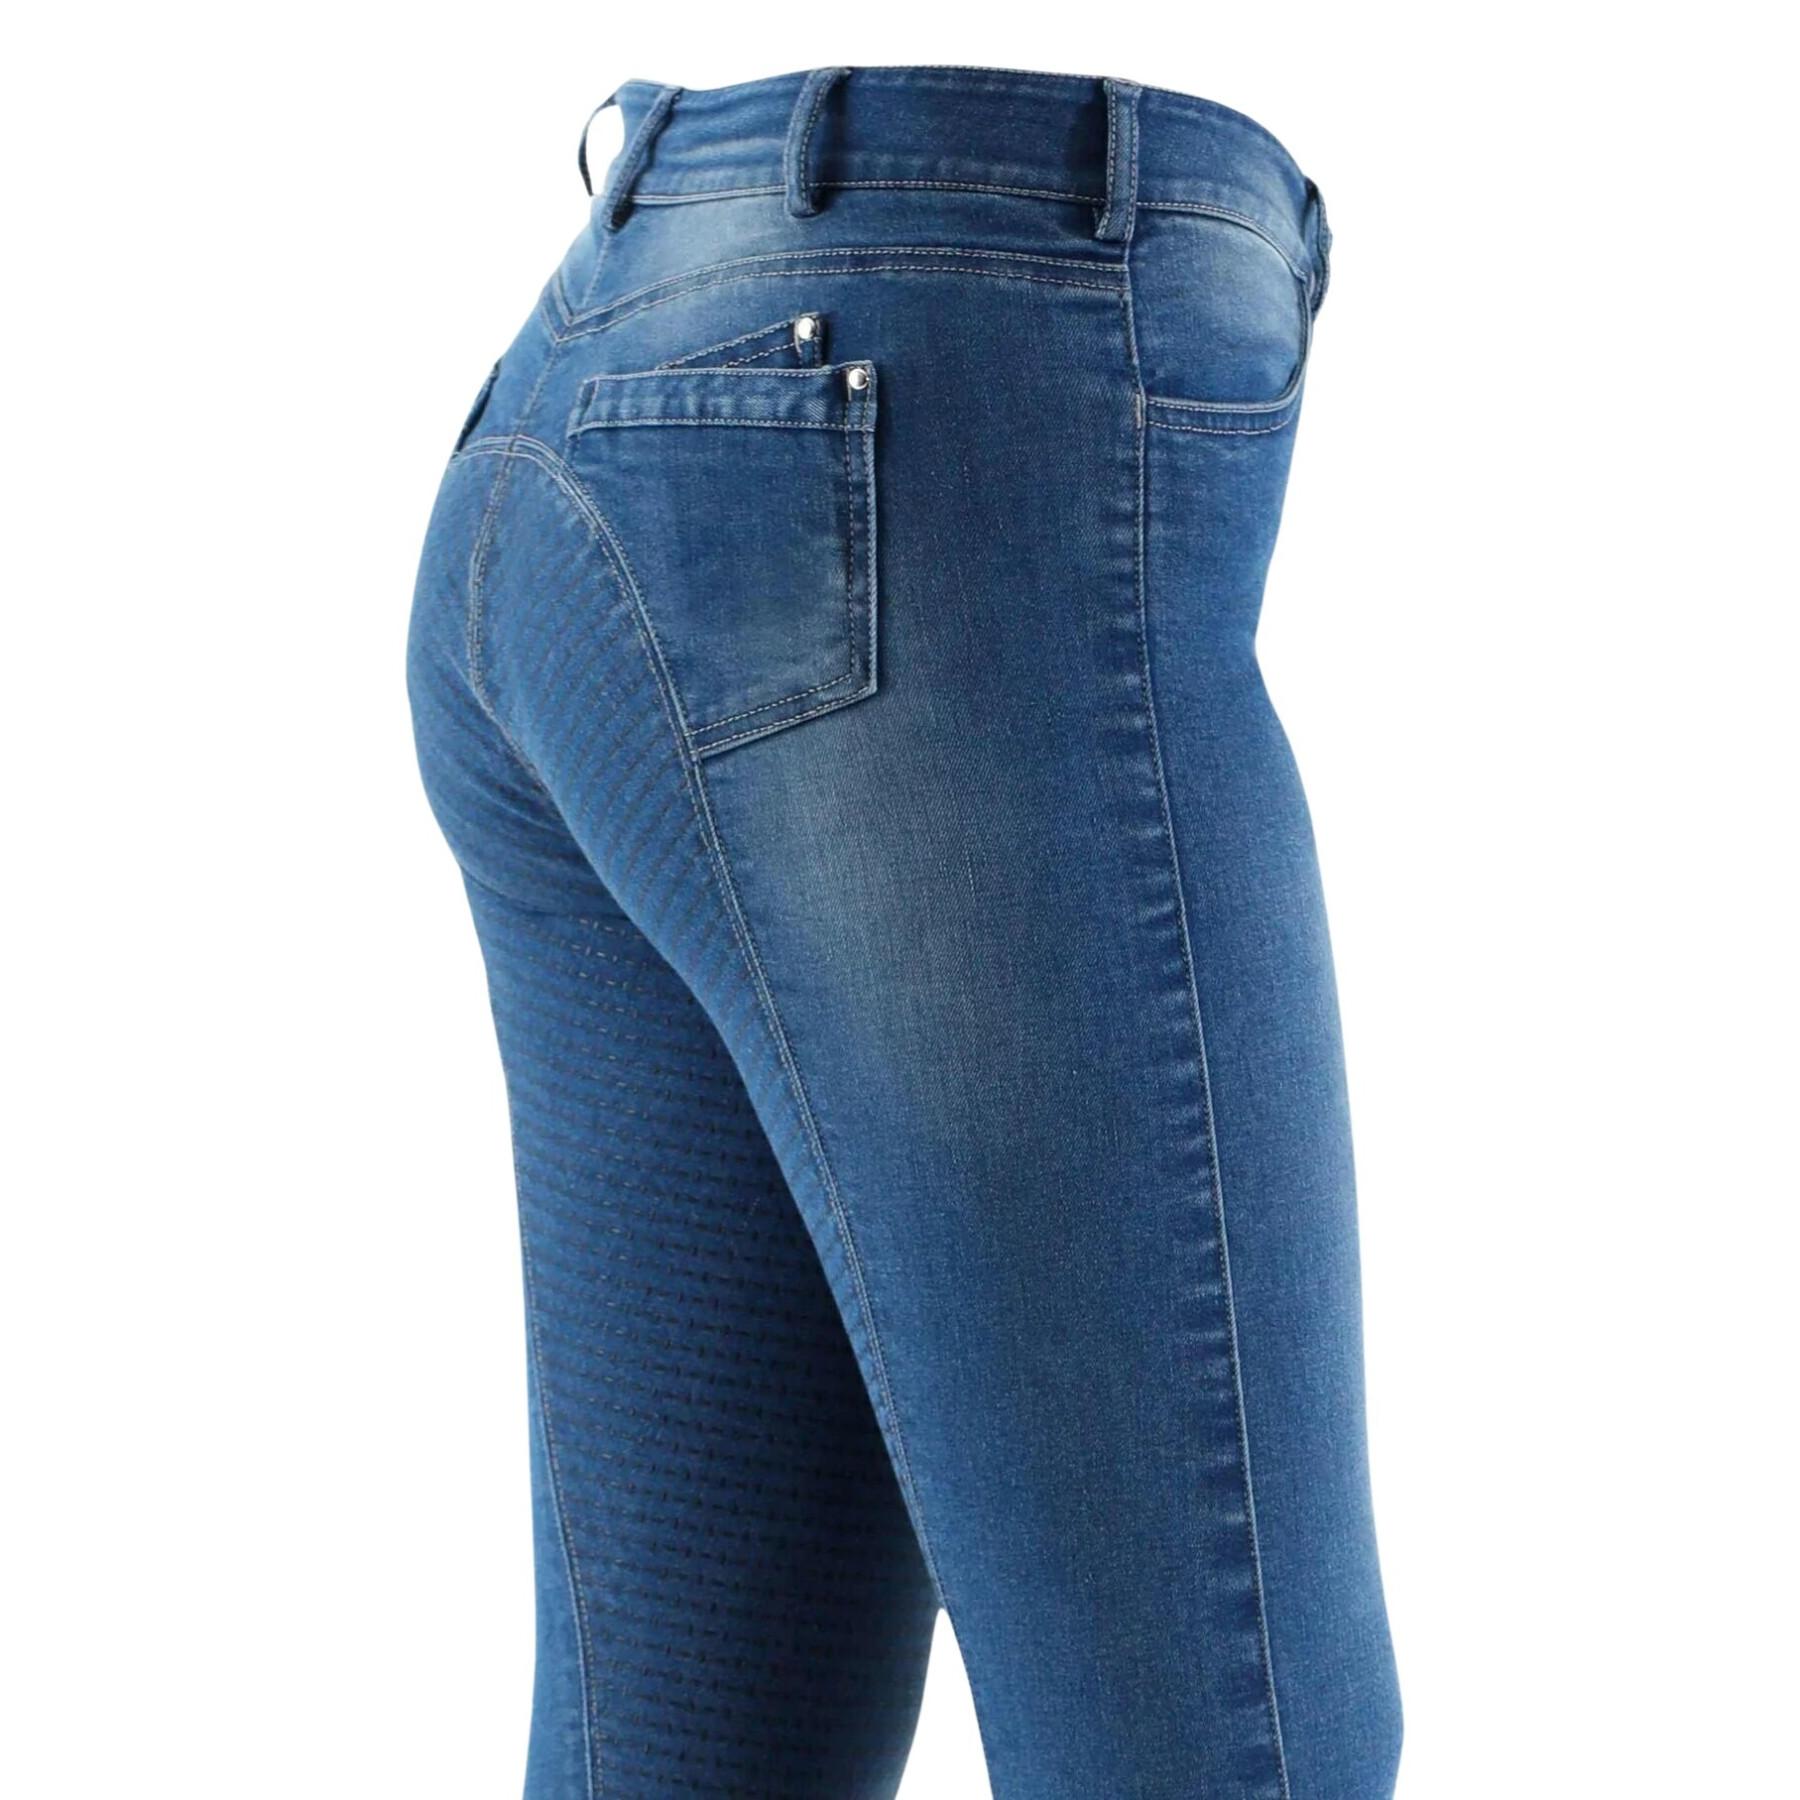 Jeans fato de montar de corpo inteiro para mulheres Premier Equine Gina